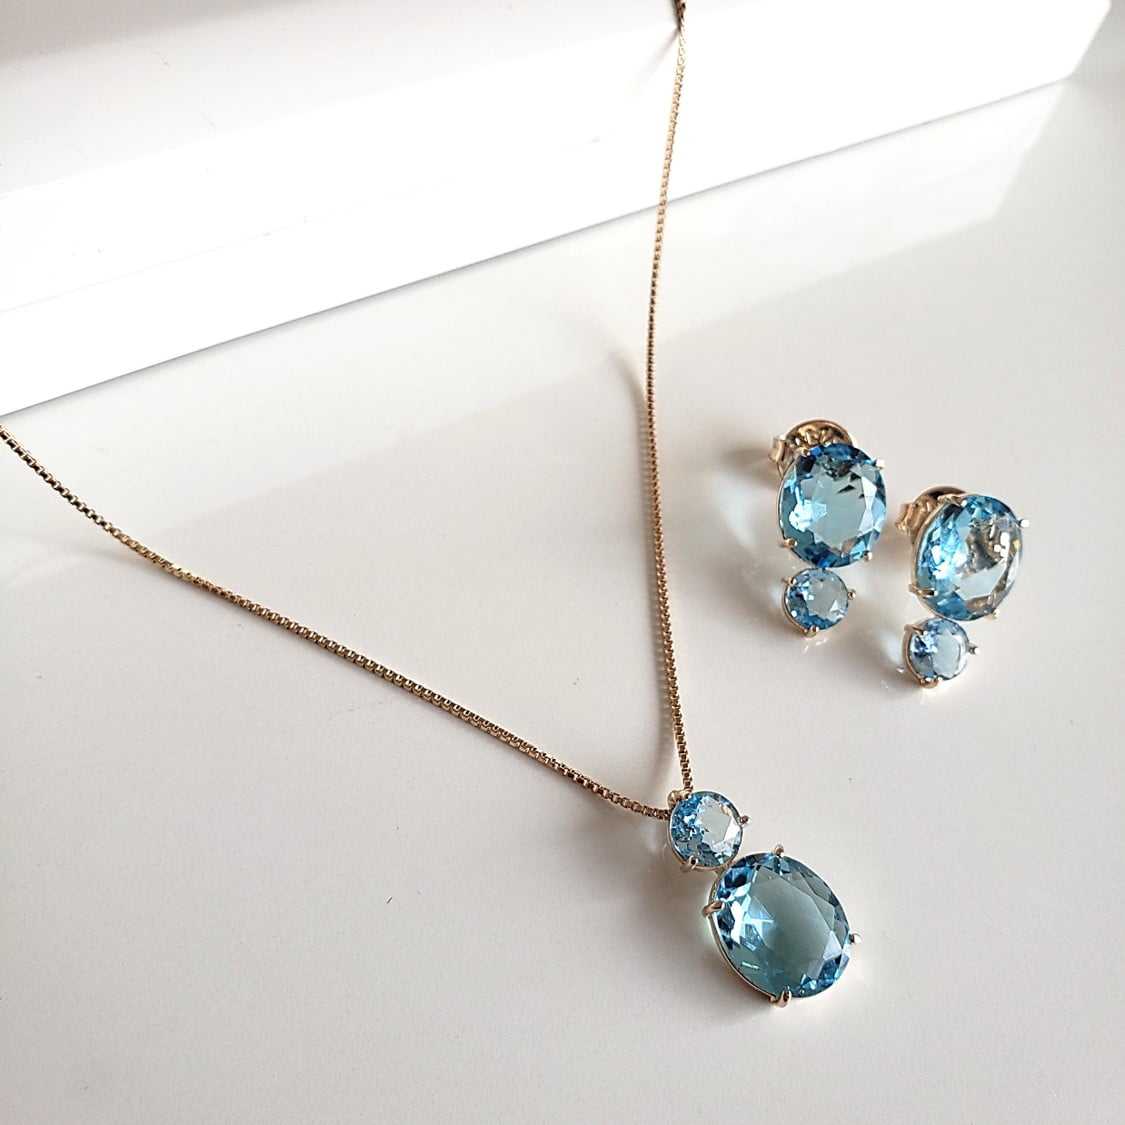 Conjunto colar e brinco de cristais azul aquamarine